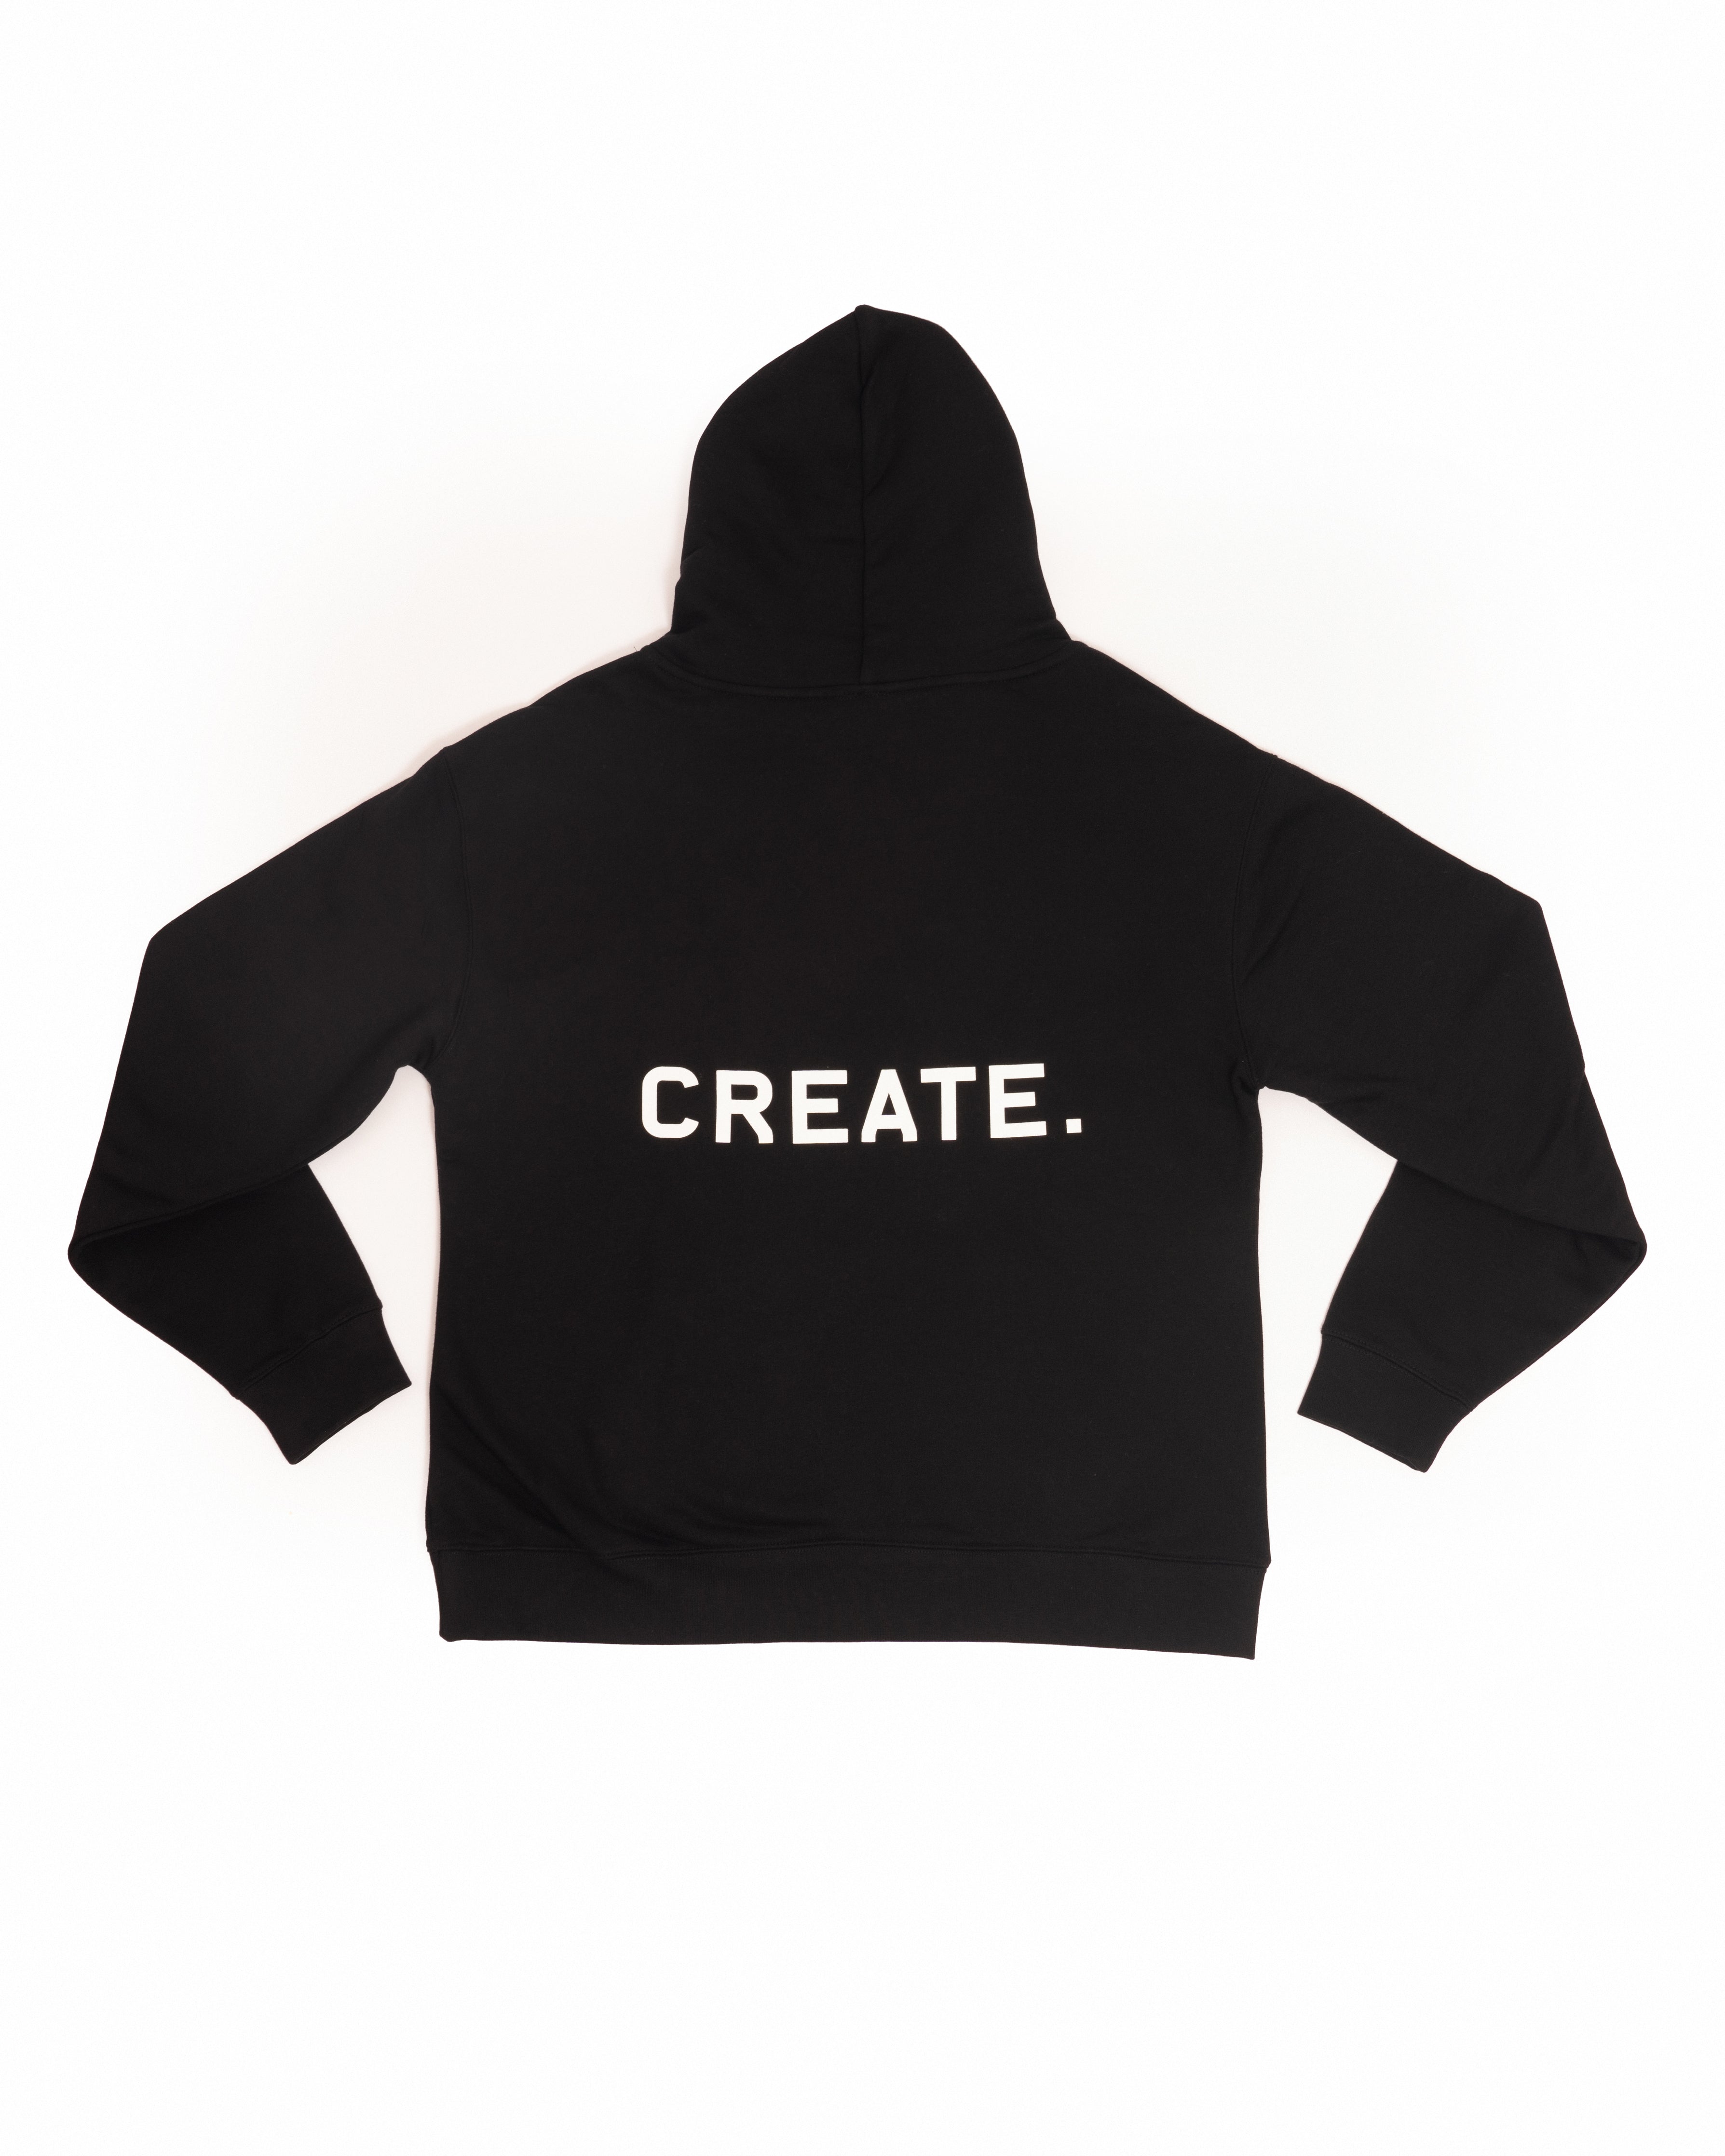 CREATE. Studio Hood - Black